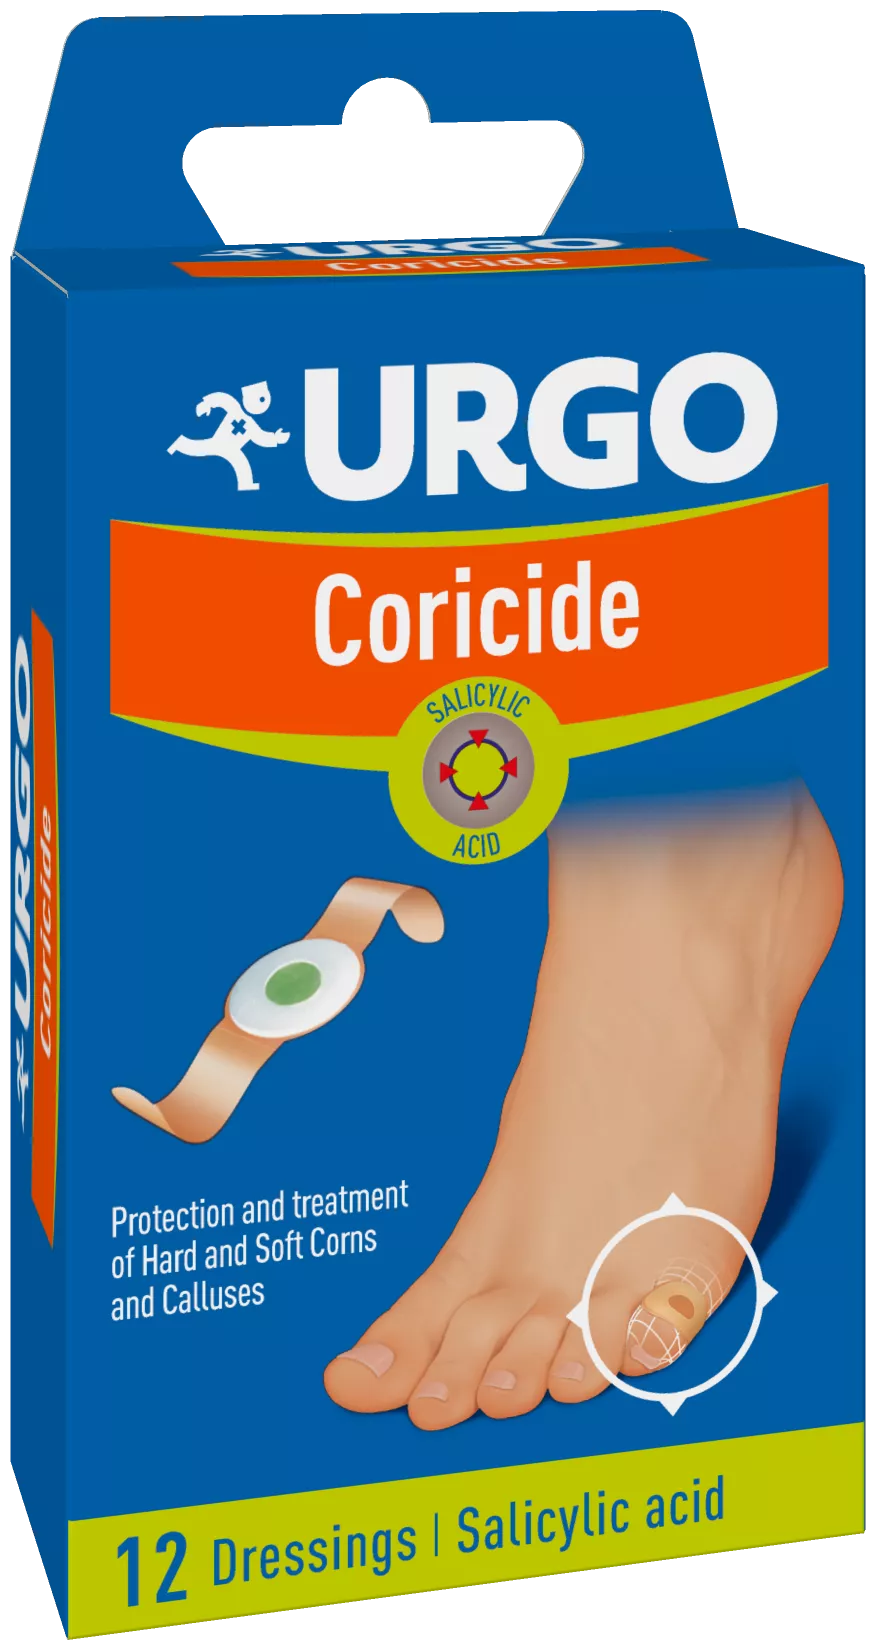 Plasturi adezivi pentru bataturi Coricide, 12 bucati, Urgo, [],remediumfarm.ro